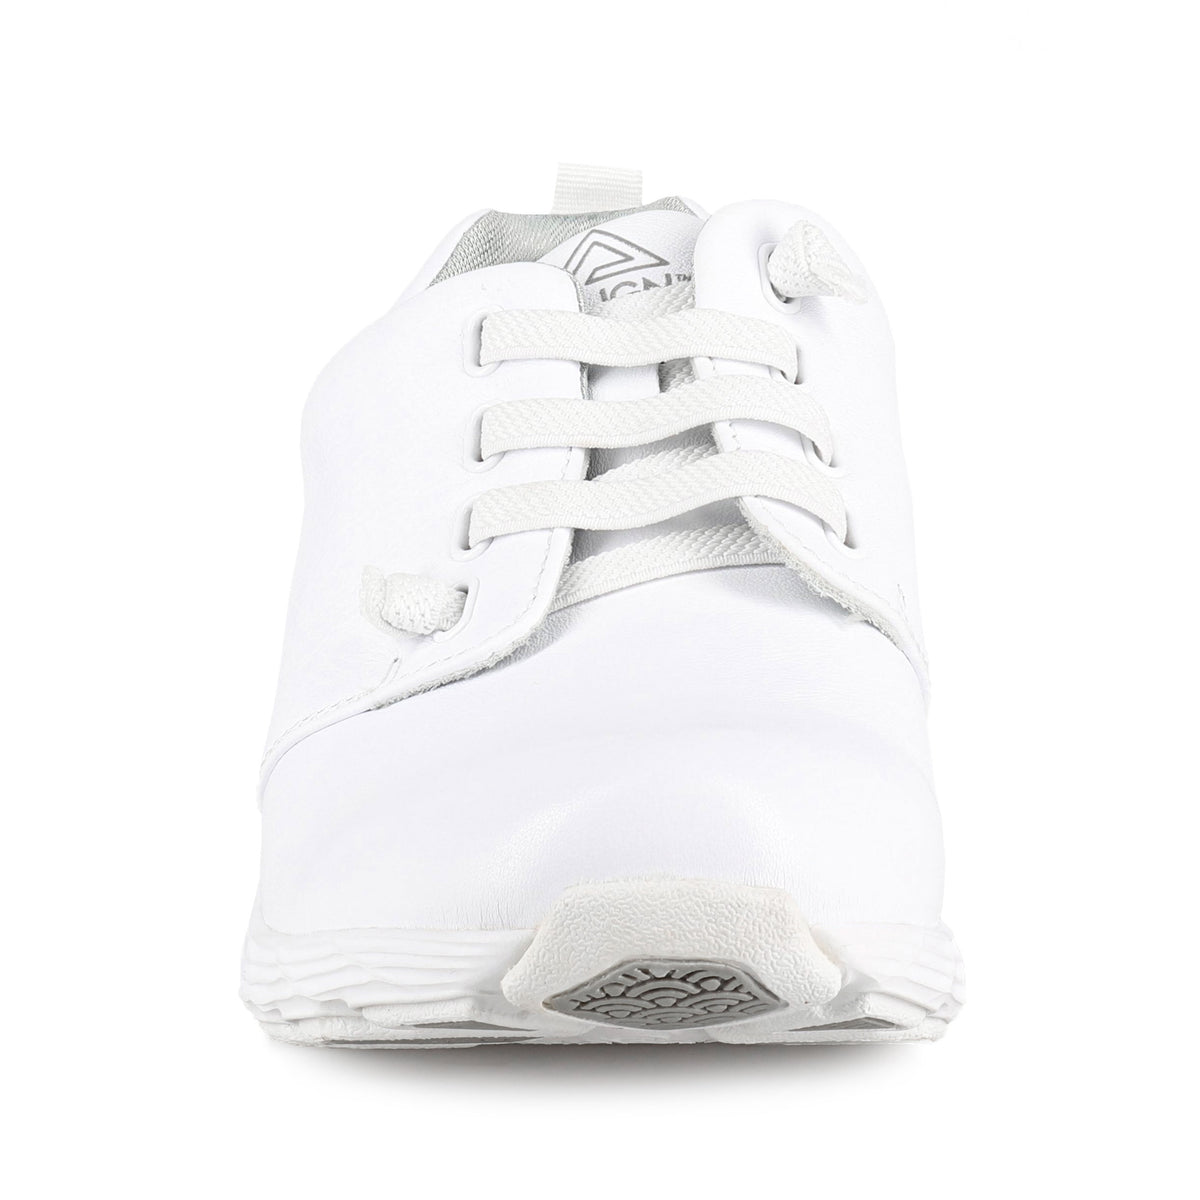 Nursemates Velocity White Shoes